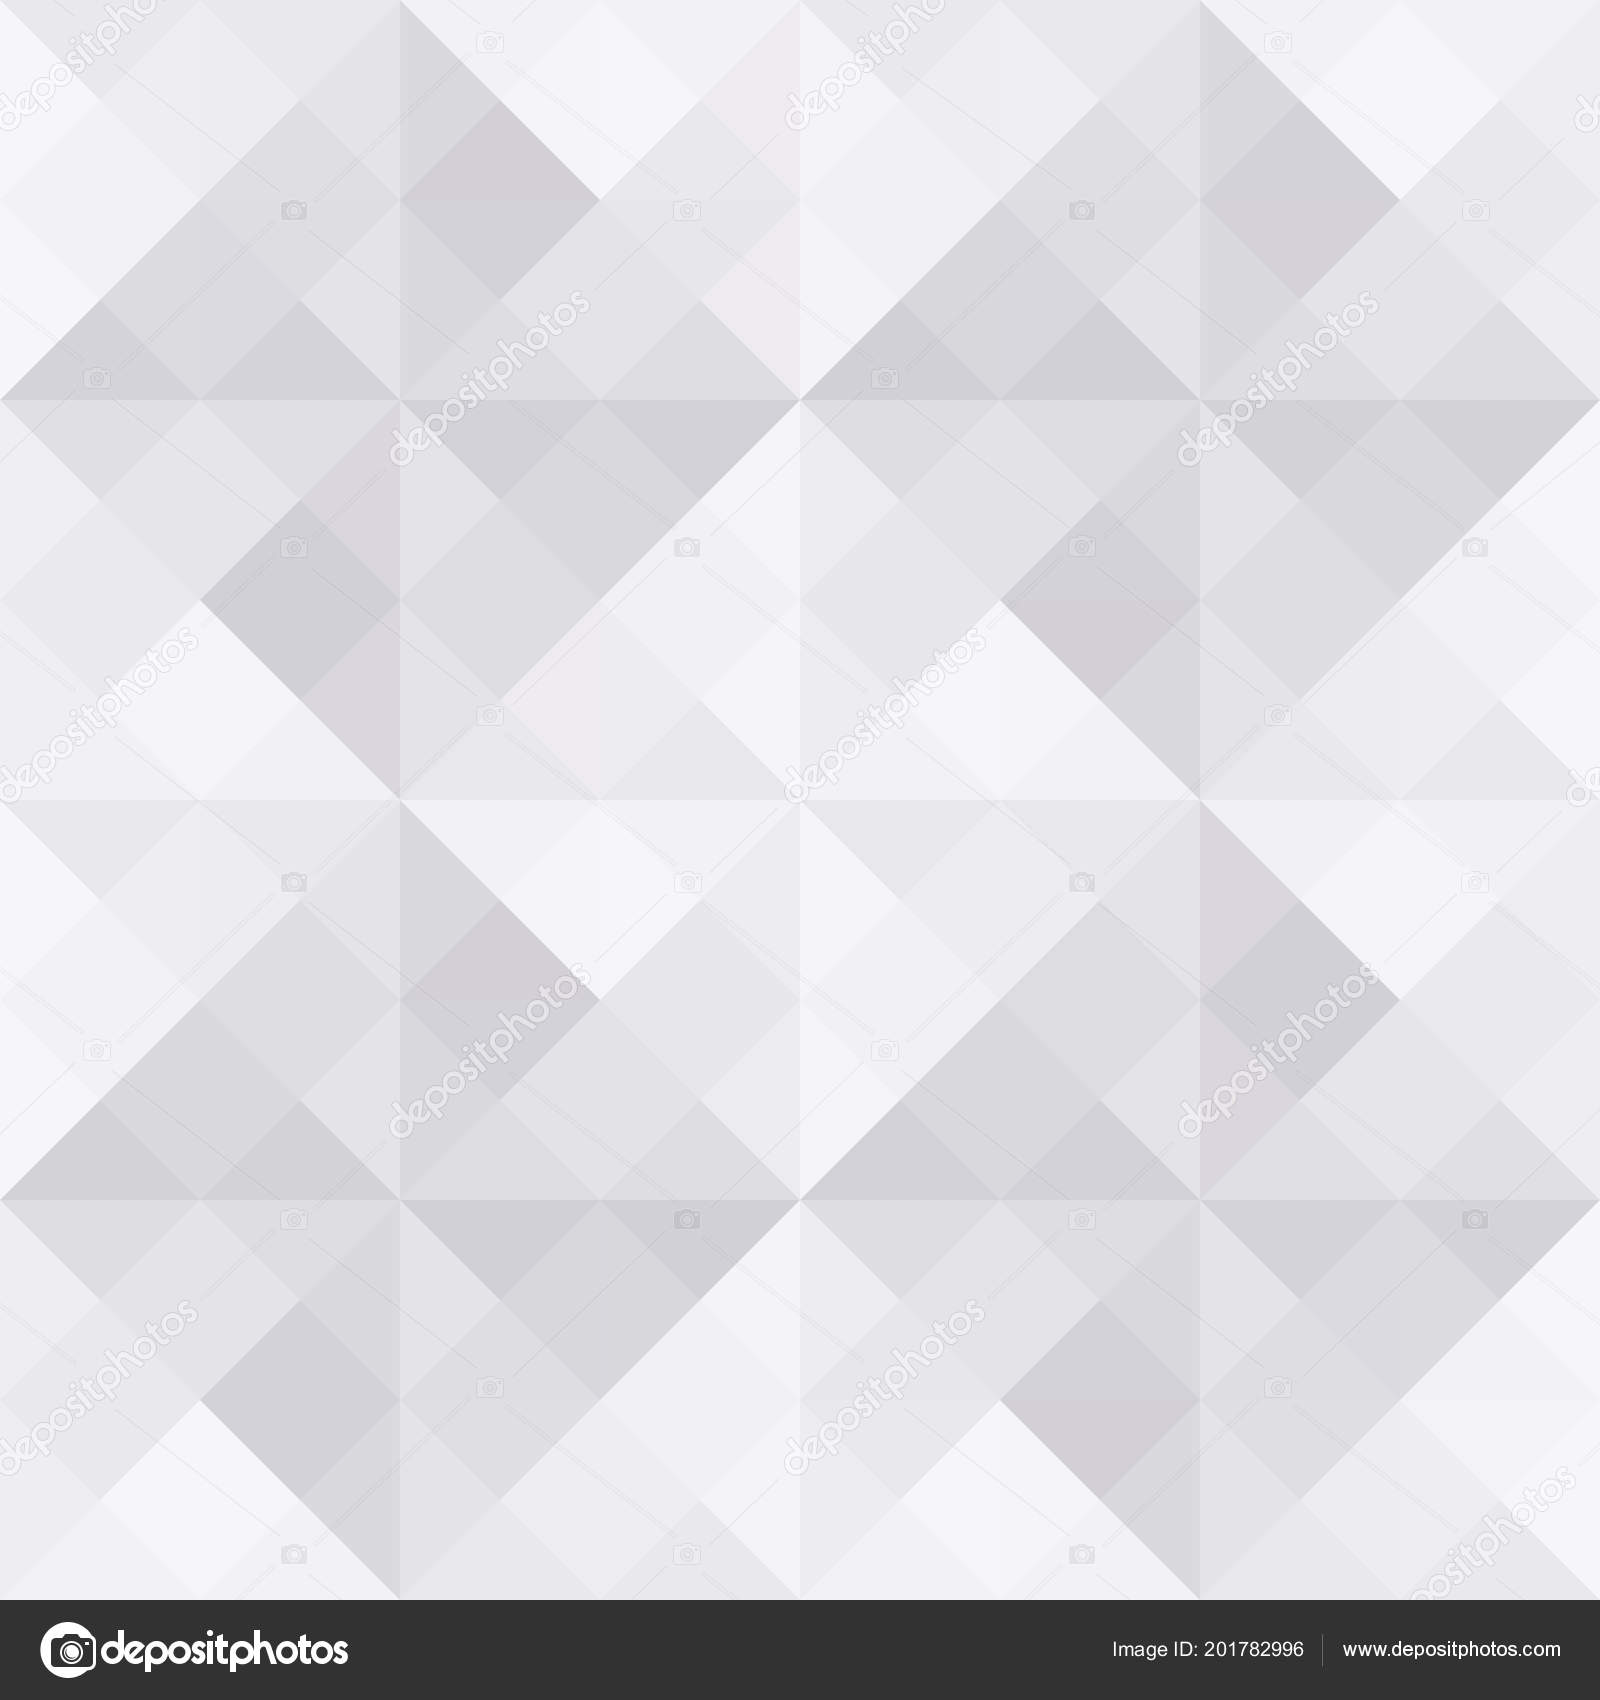 Серый Геометрический Фон Треугольник Квадратный Узор стоковое фото ©gubgibgift 201782996